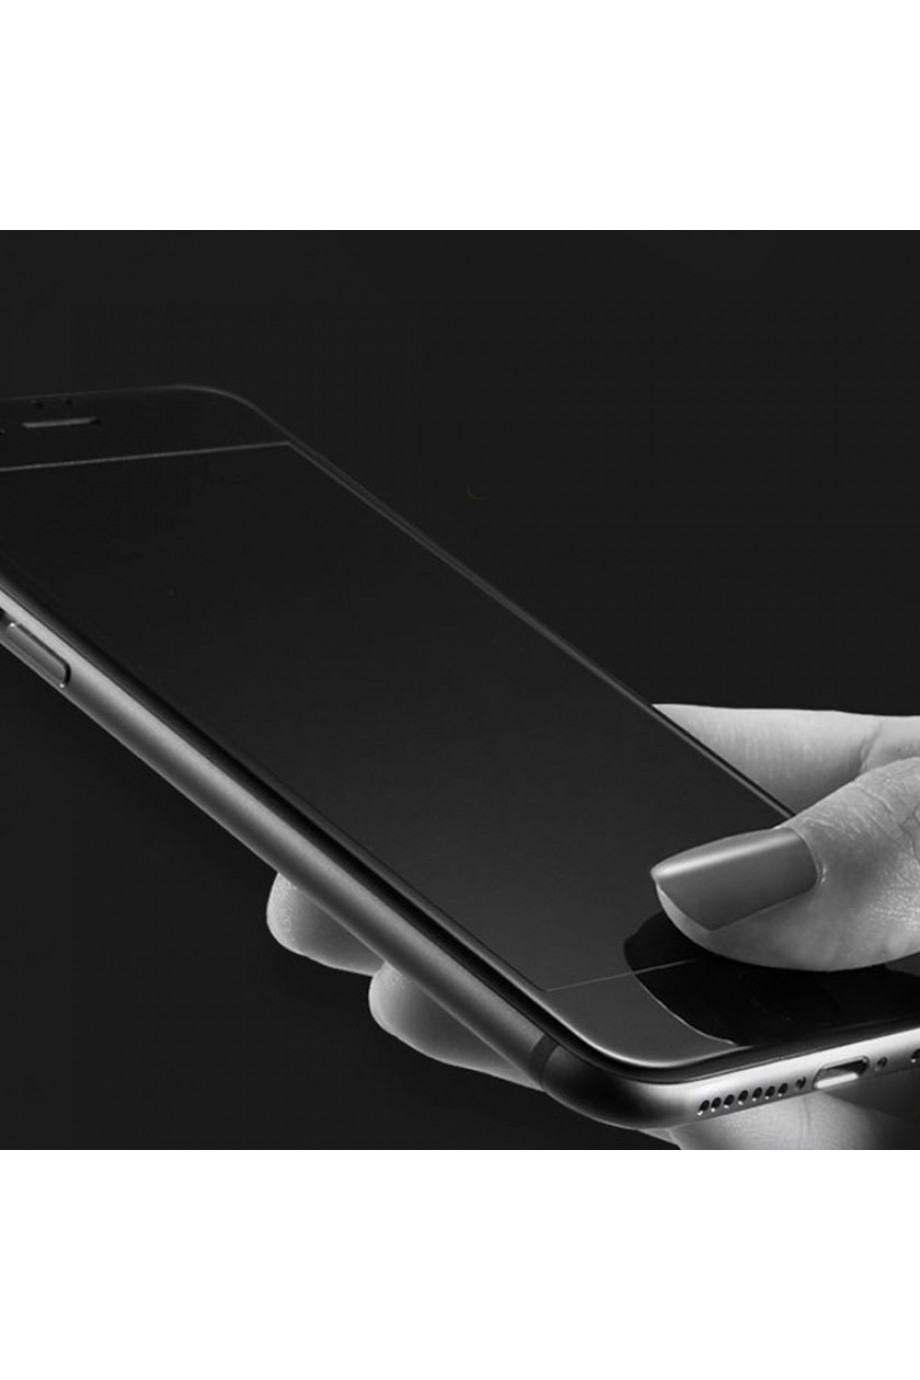 Защитное стекло 5D Mikomo для iPhone 6S, черная рамка, полный клей